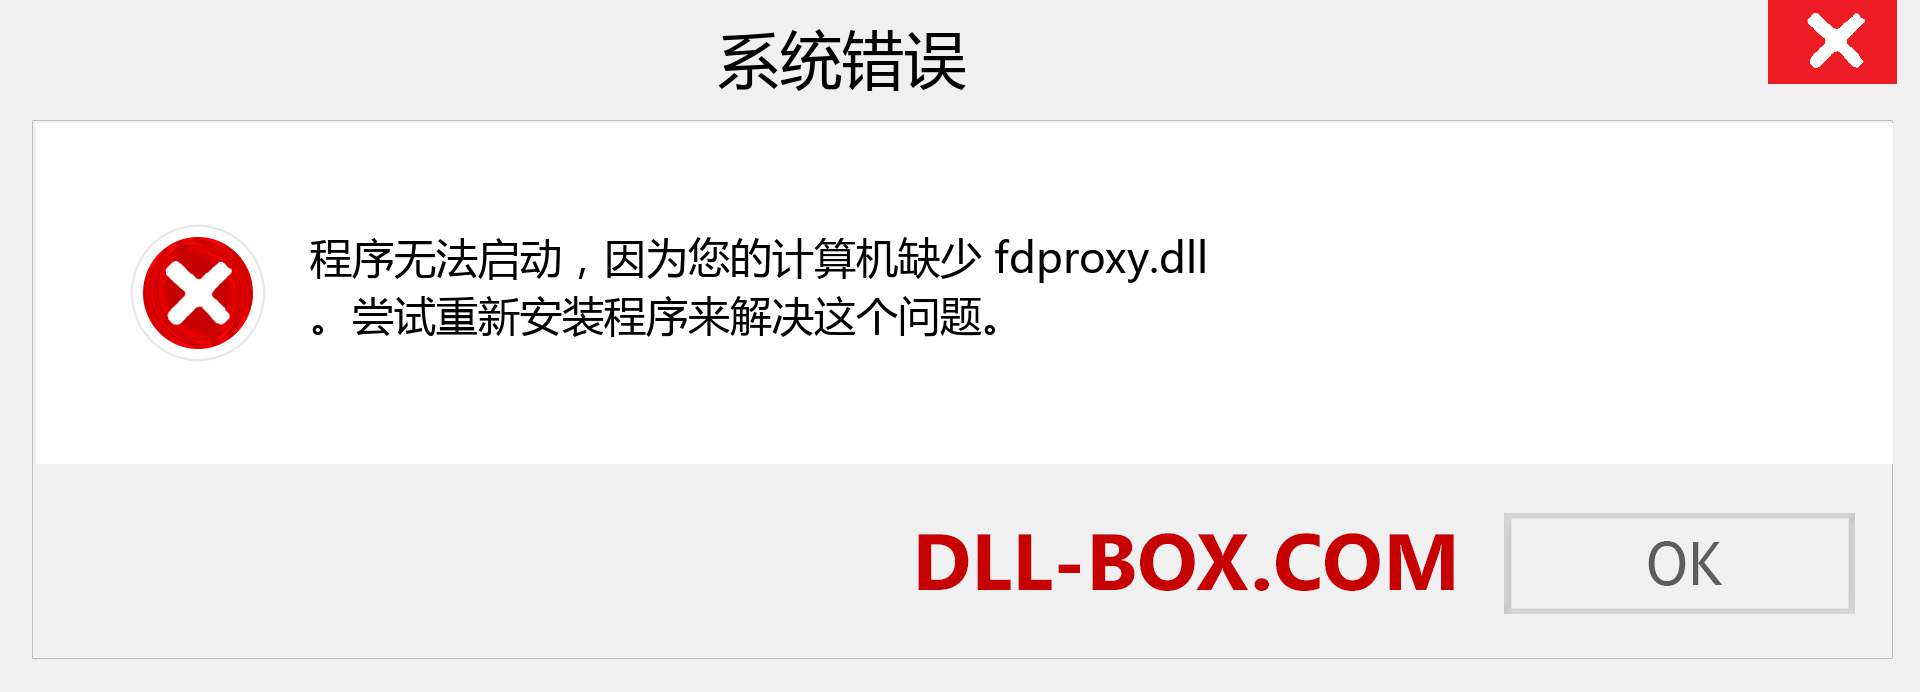 fdproxy.dll 文件丢失？。 适用于 Windows 7、8、10 的下载 - 修复 Windows、照片、图像上的 fdproxy dll 丢失错误